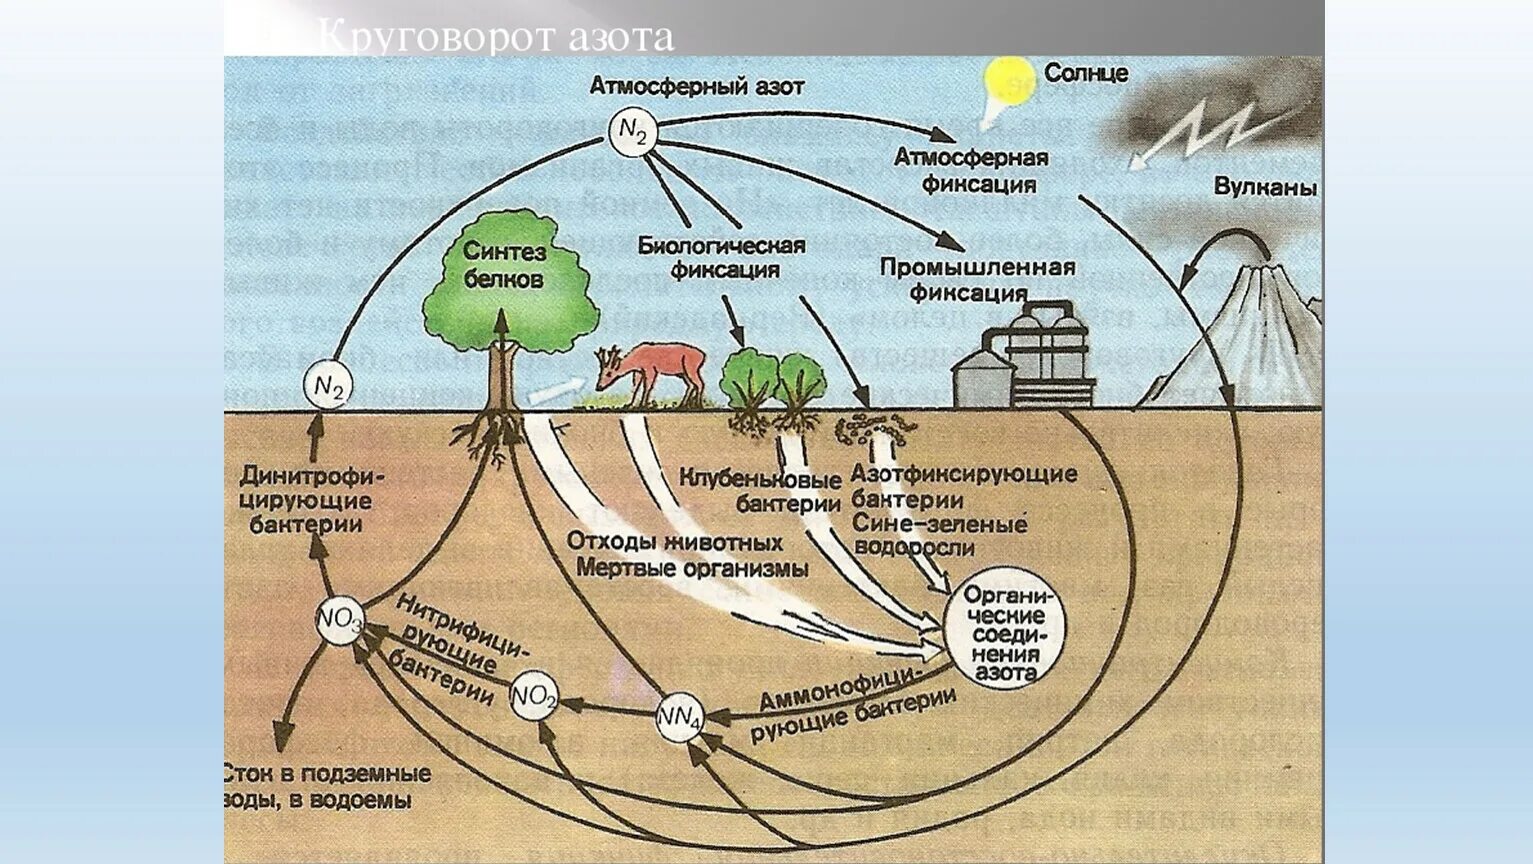 Кругооборот азота в биосфере. Круговорот азота в природе схема. Круговорот веществ в биосфере азот. Биологический круговорот азота.